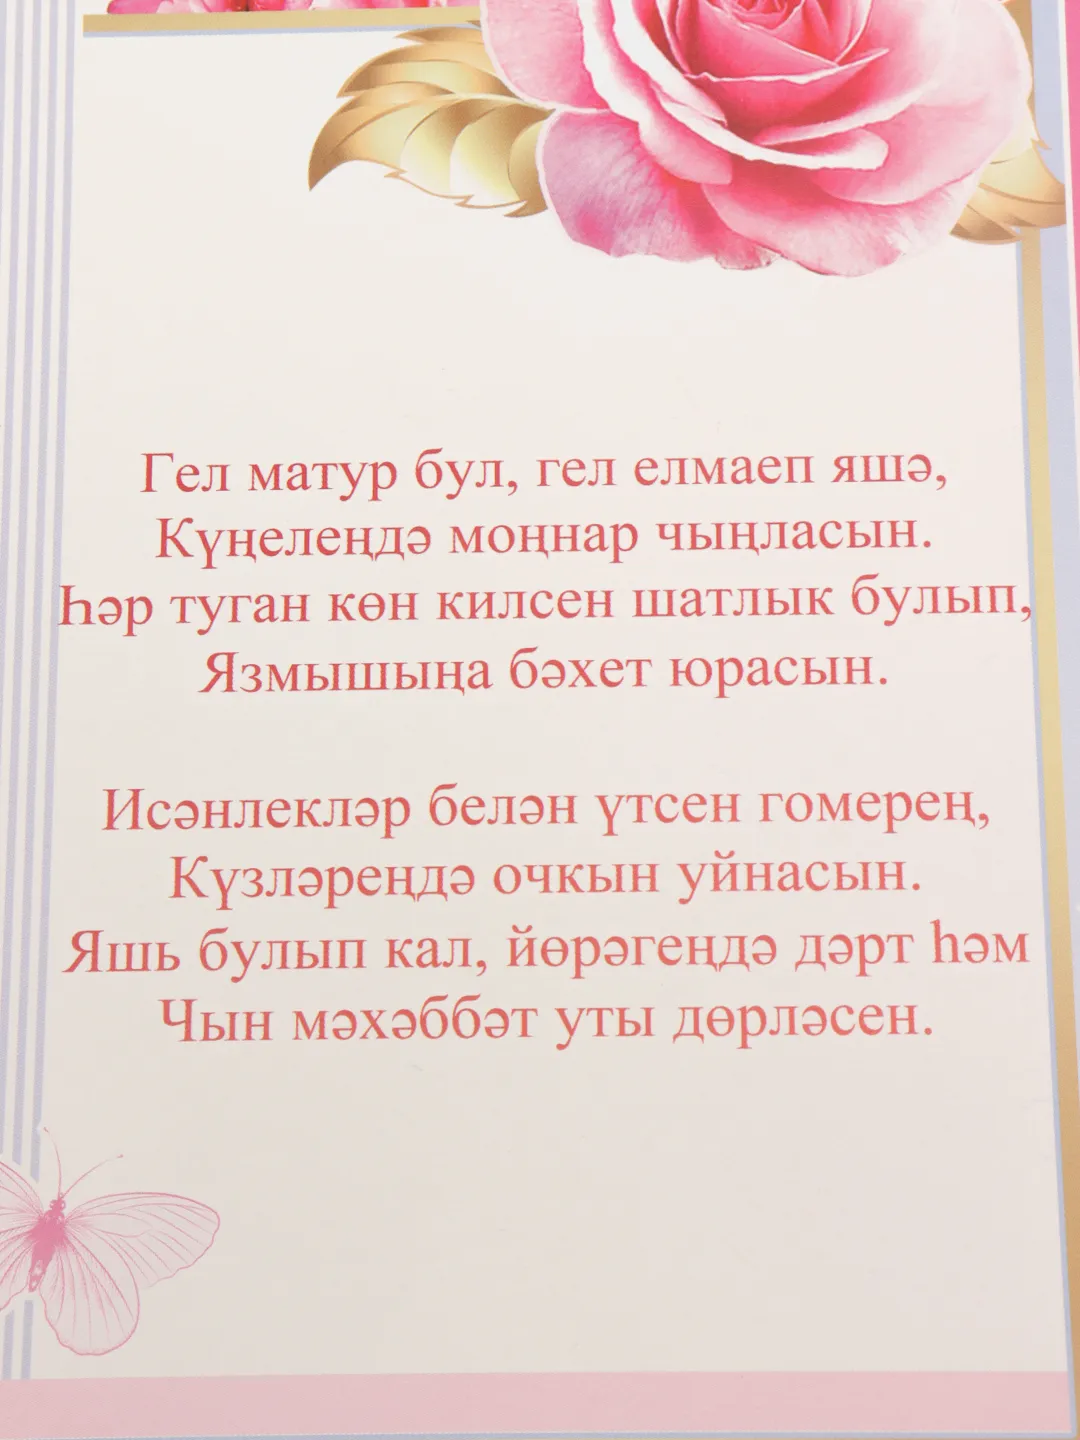 С днем рождения на татарском языке - Поздравления и тосты